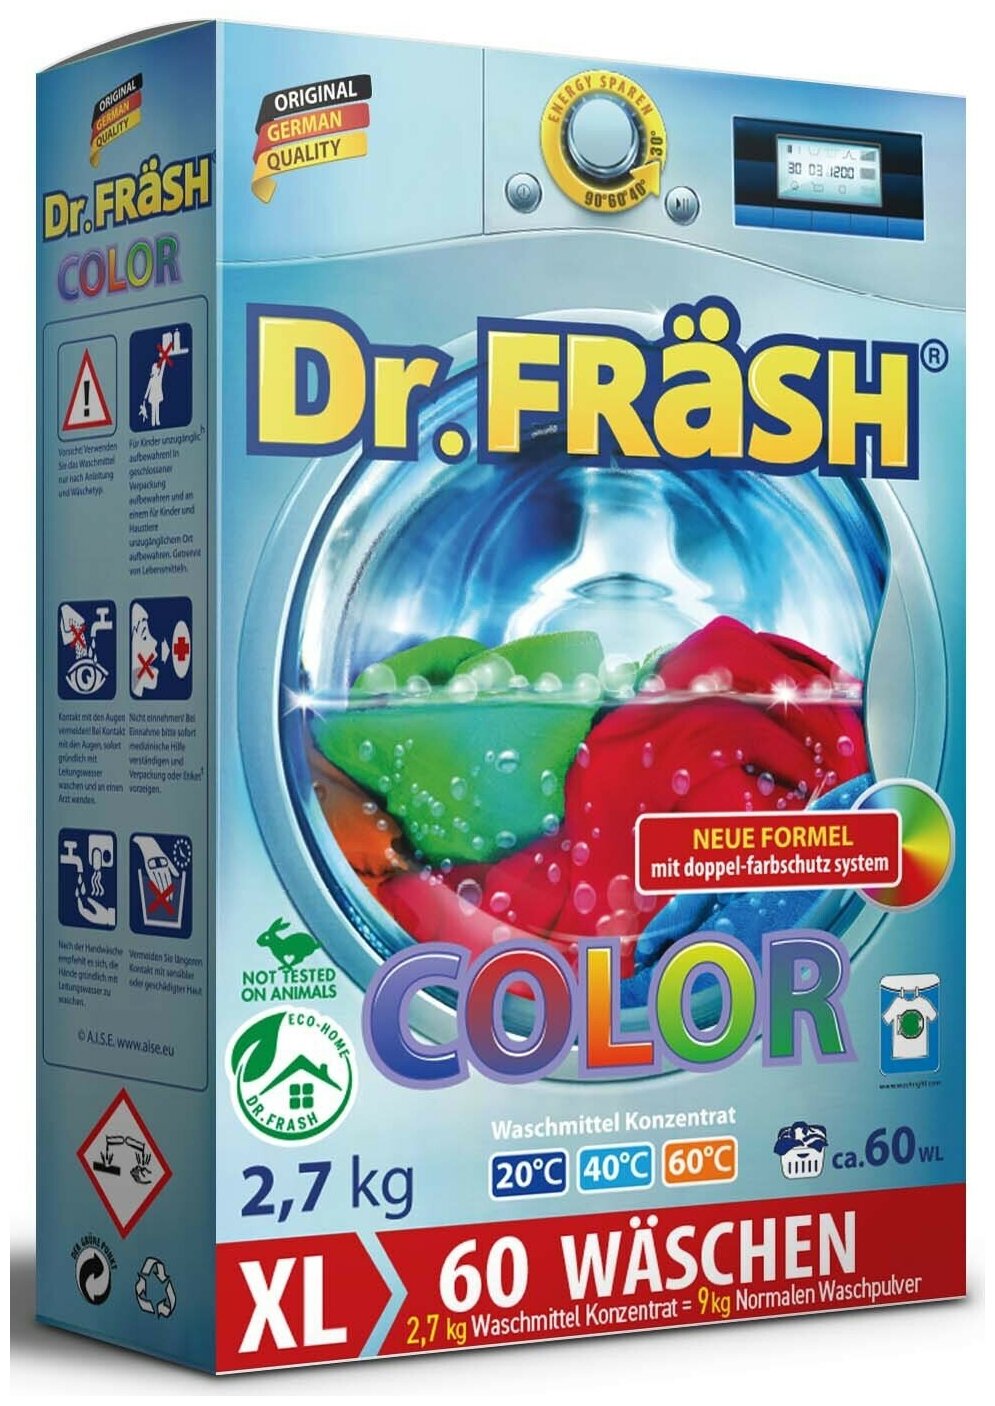 Dr.FRASH Концентрированный стиральный порошок для цветного белья "COLOR" 2,7 кг